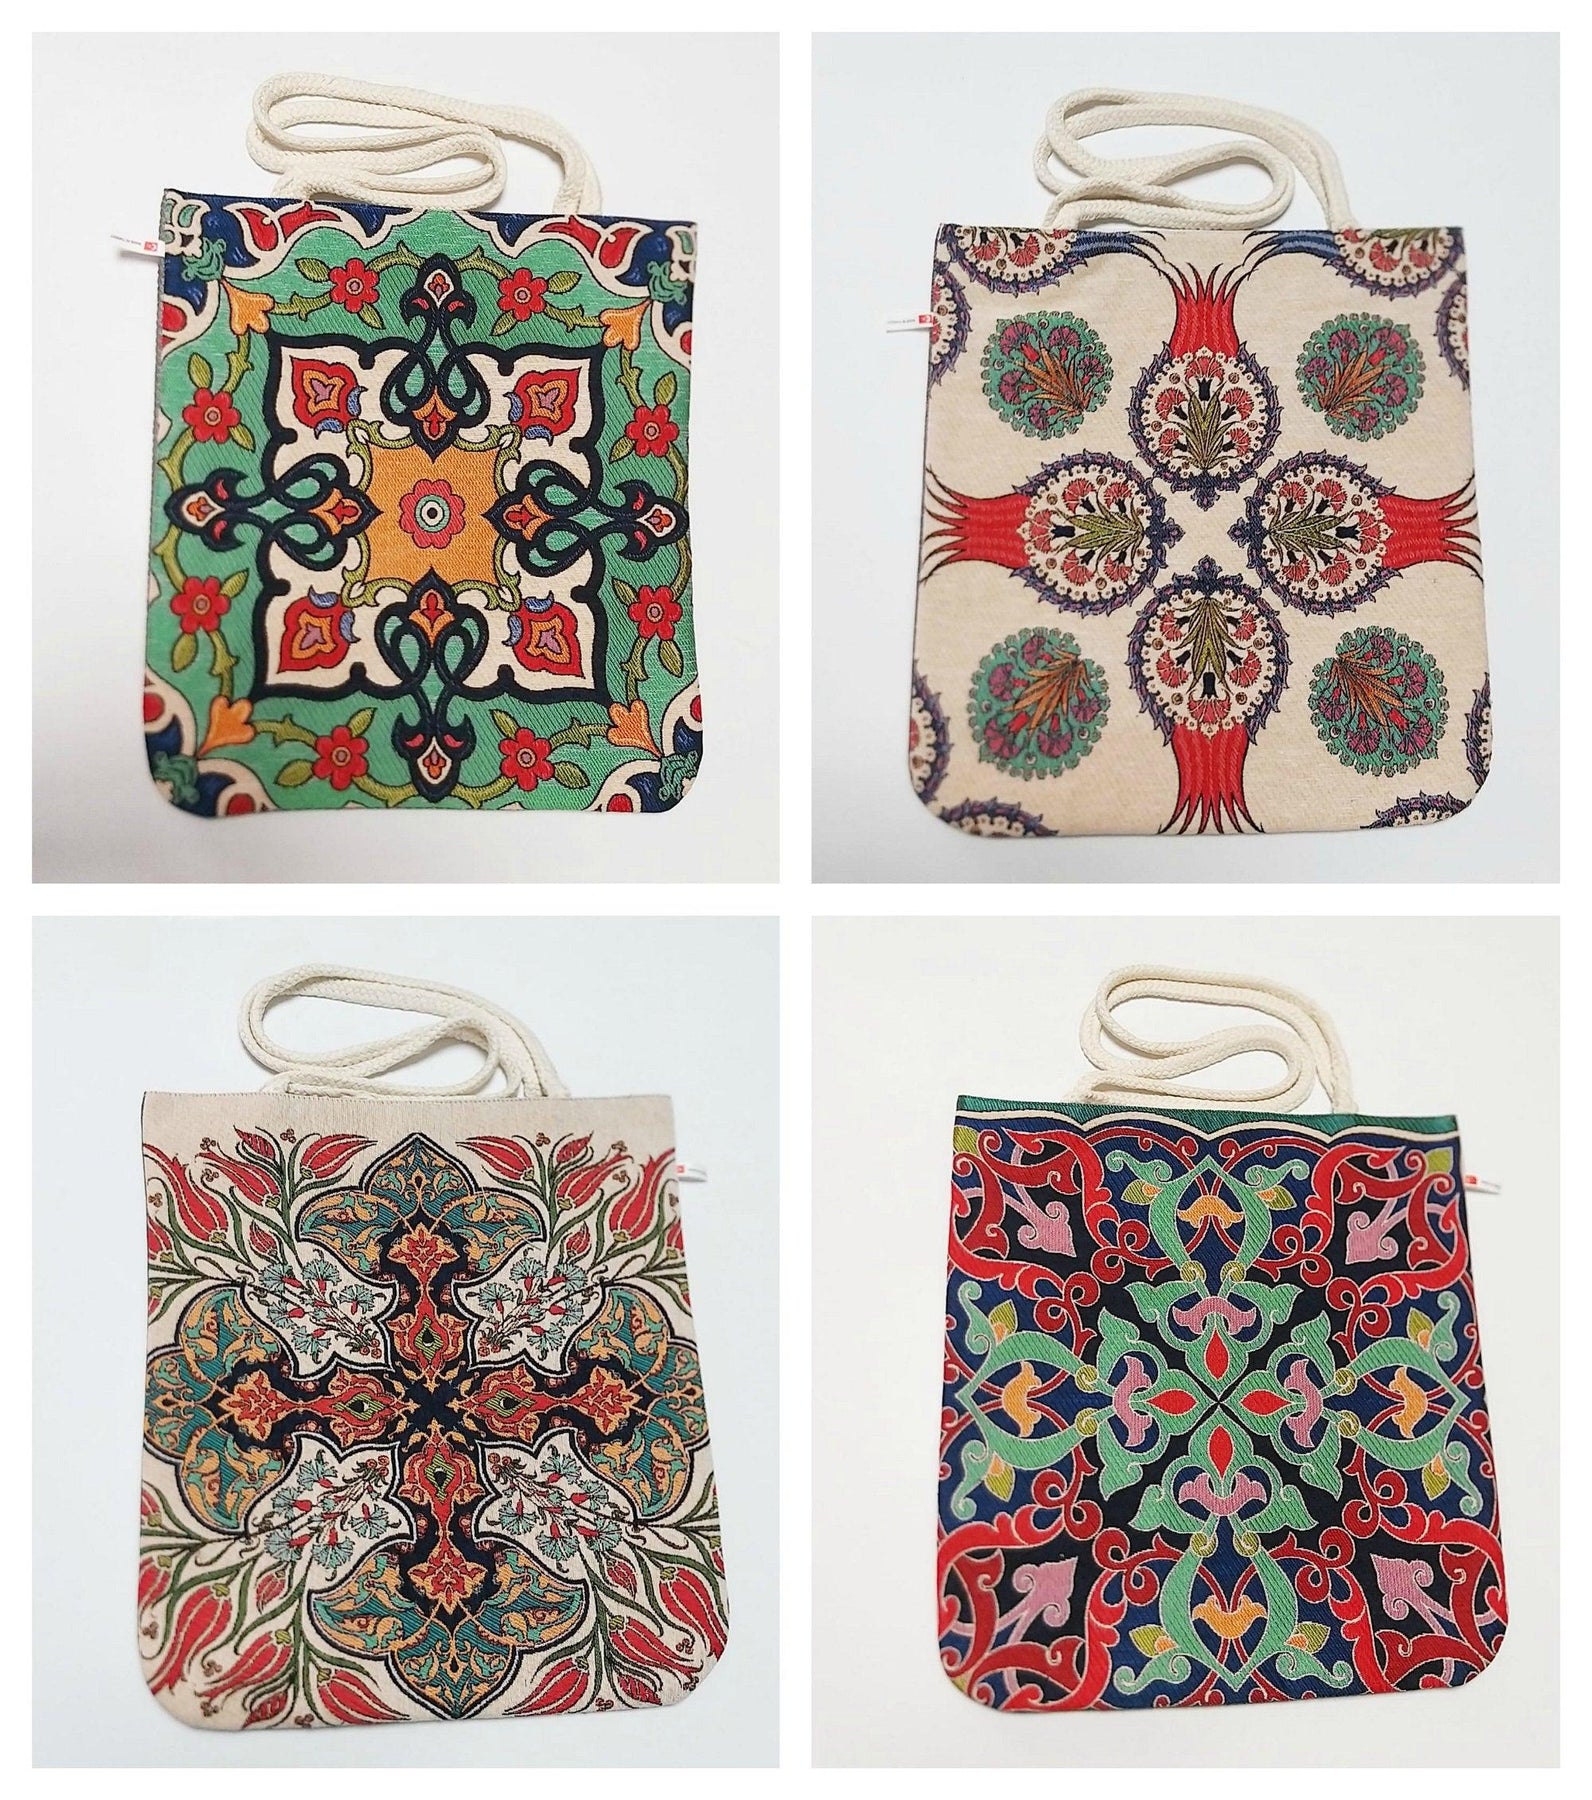 Handmade Bag, Hand Woven Bag, Crochet Bag, Knitted Bag,Luxury Bag,Designer  Bag, | eBay